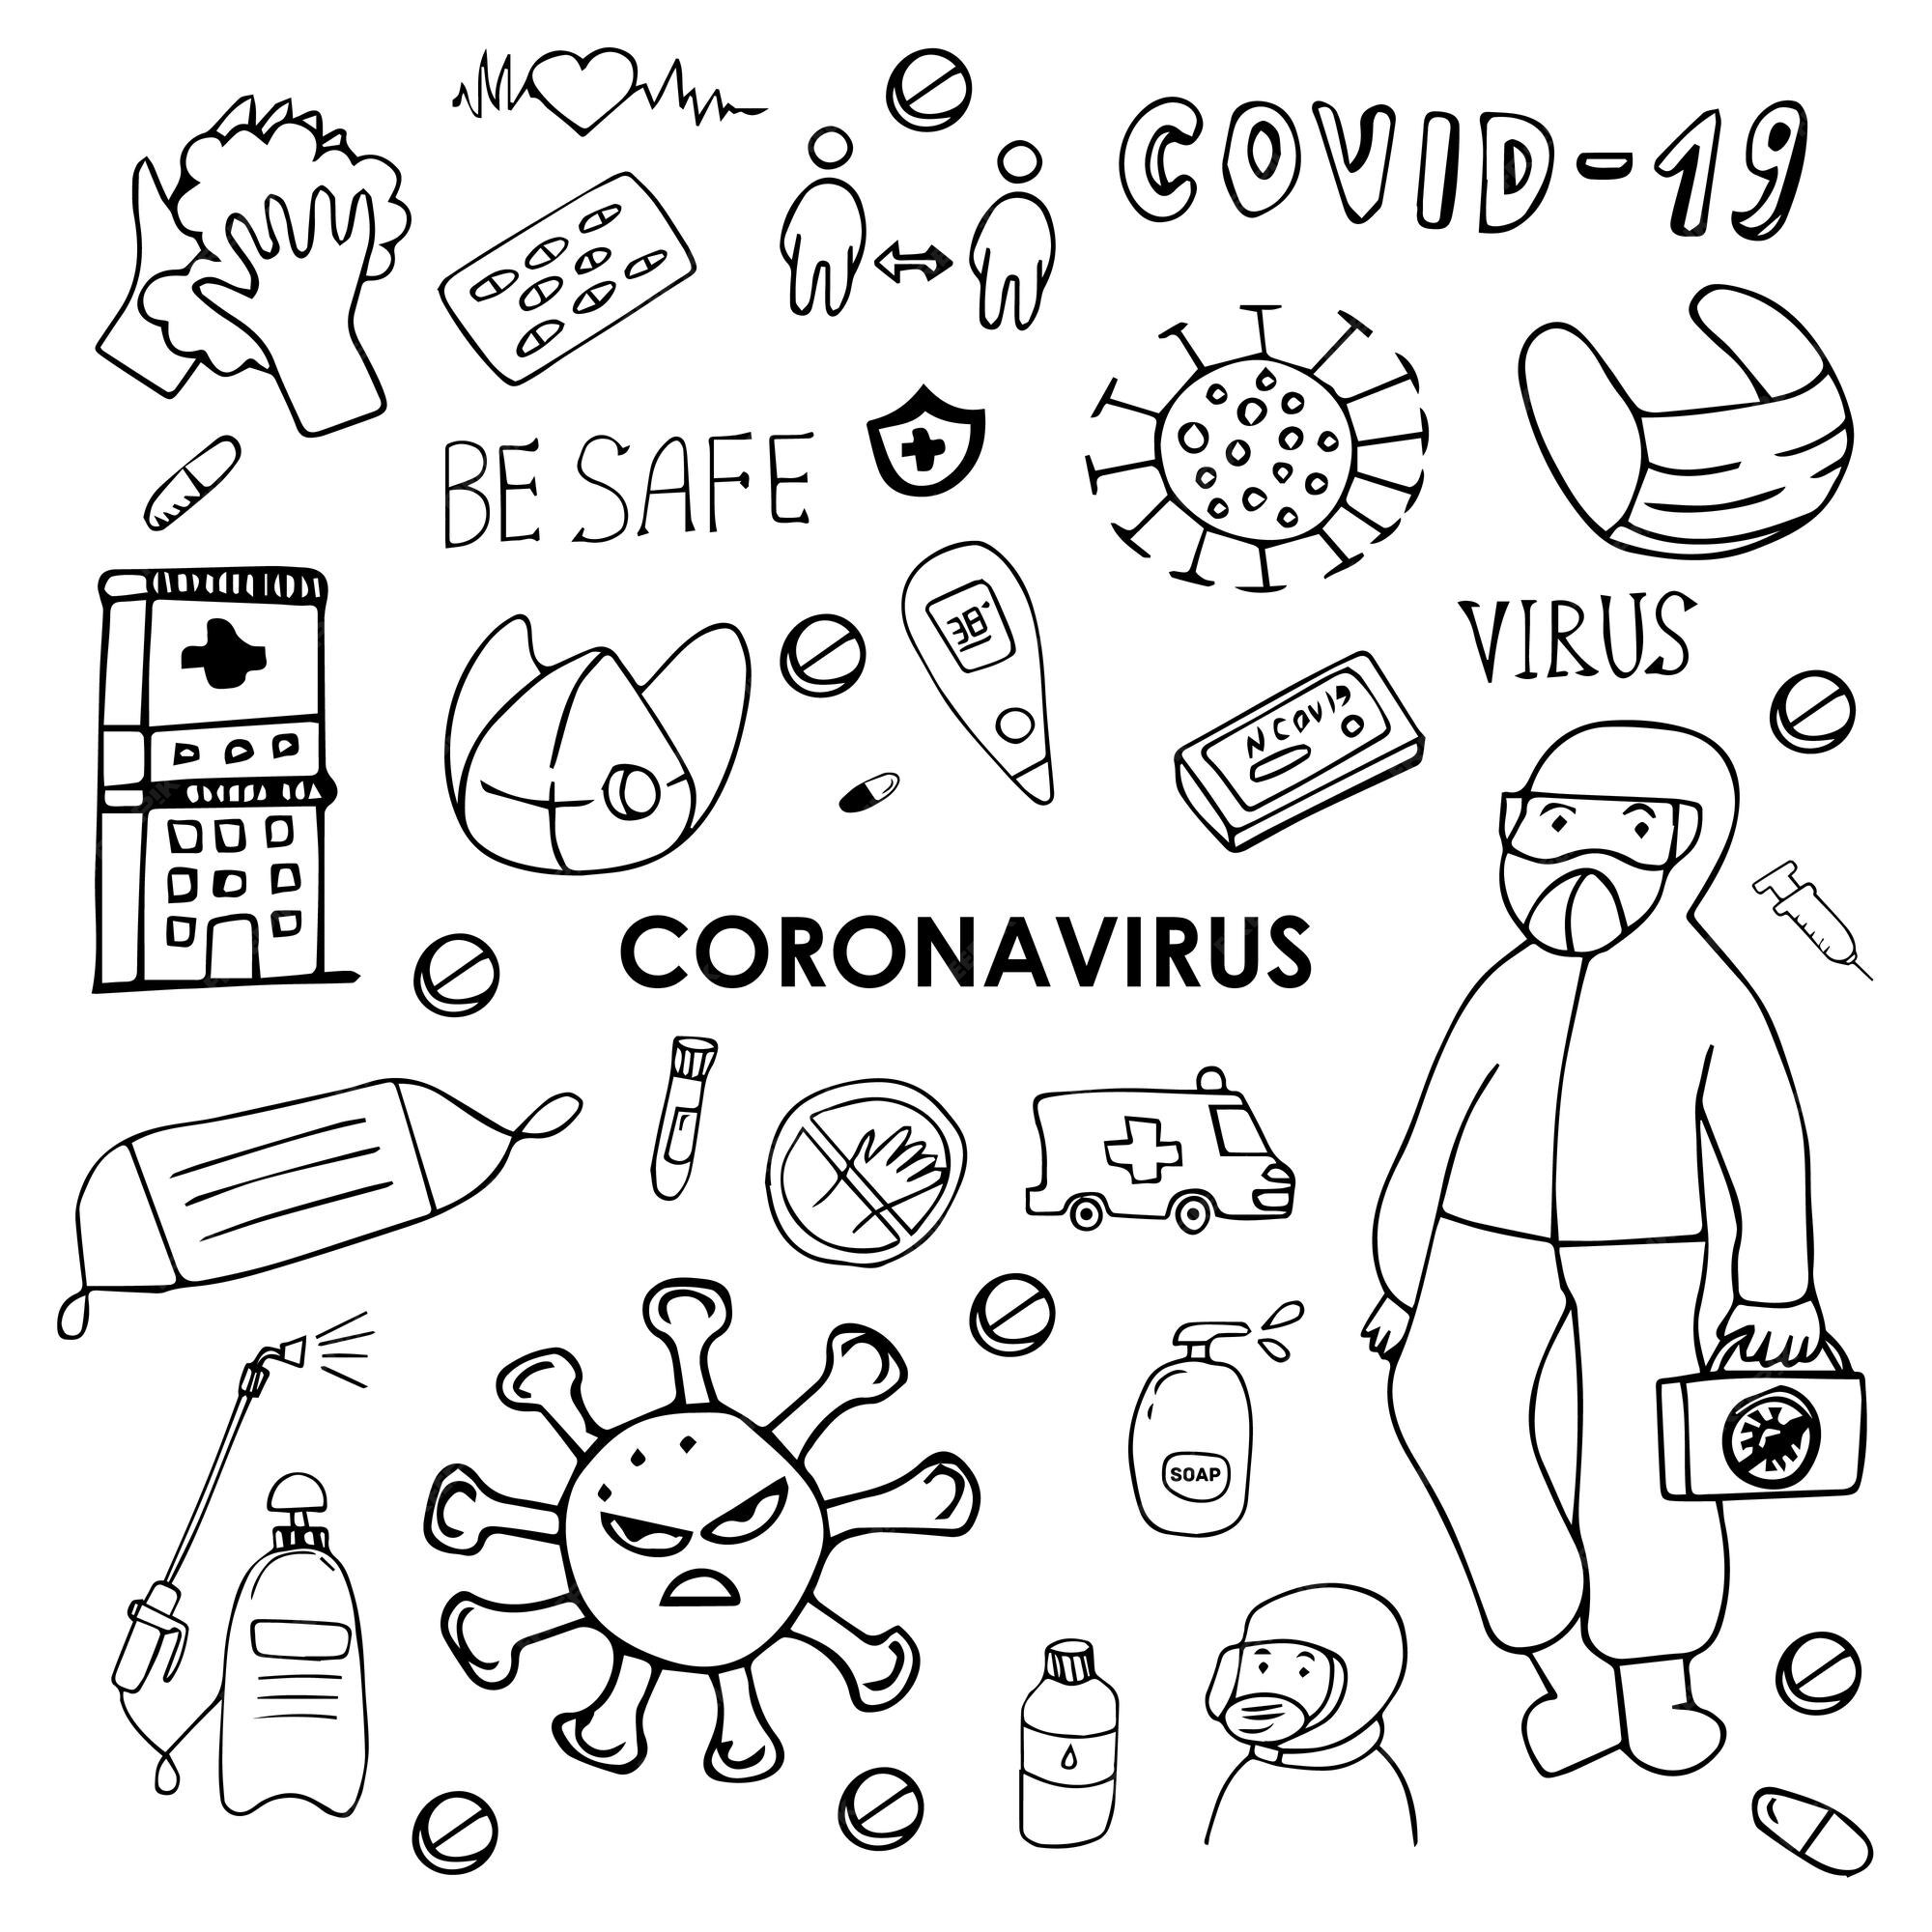 Imágenes de Coronavirus Dibujo - Descarga gratuita en Freepik